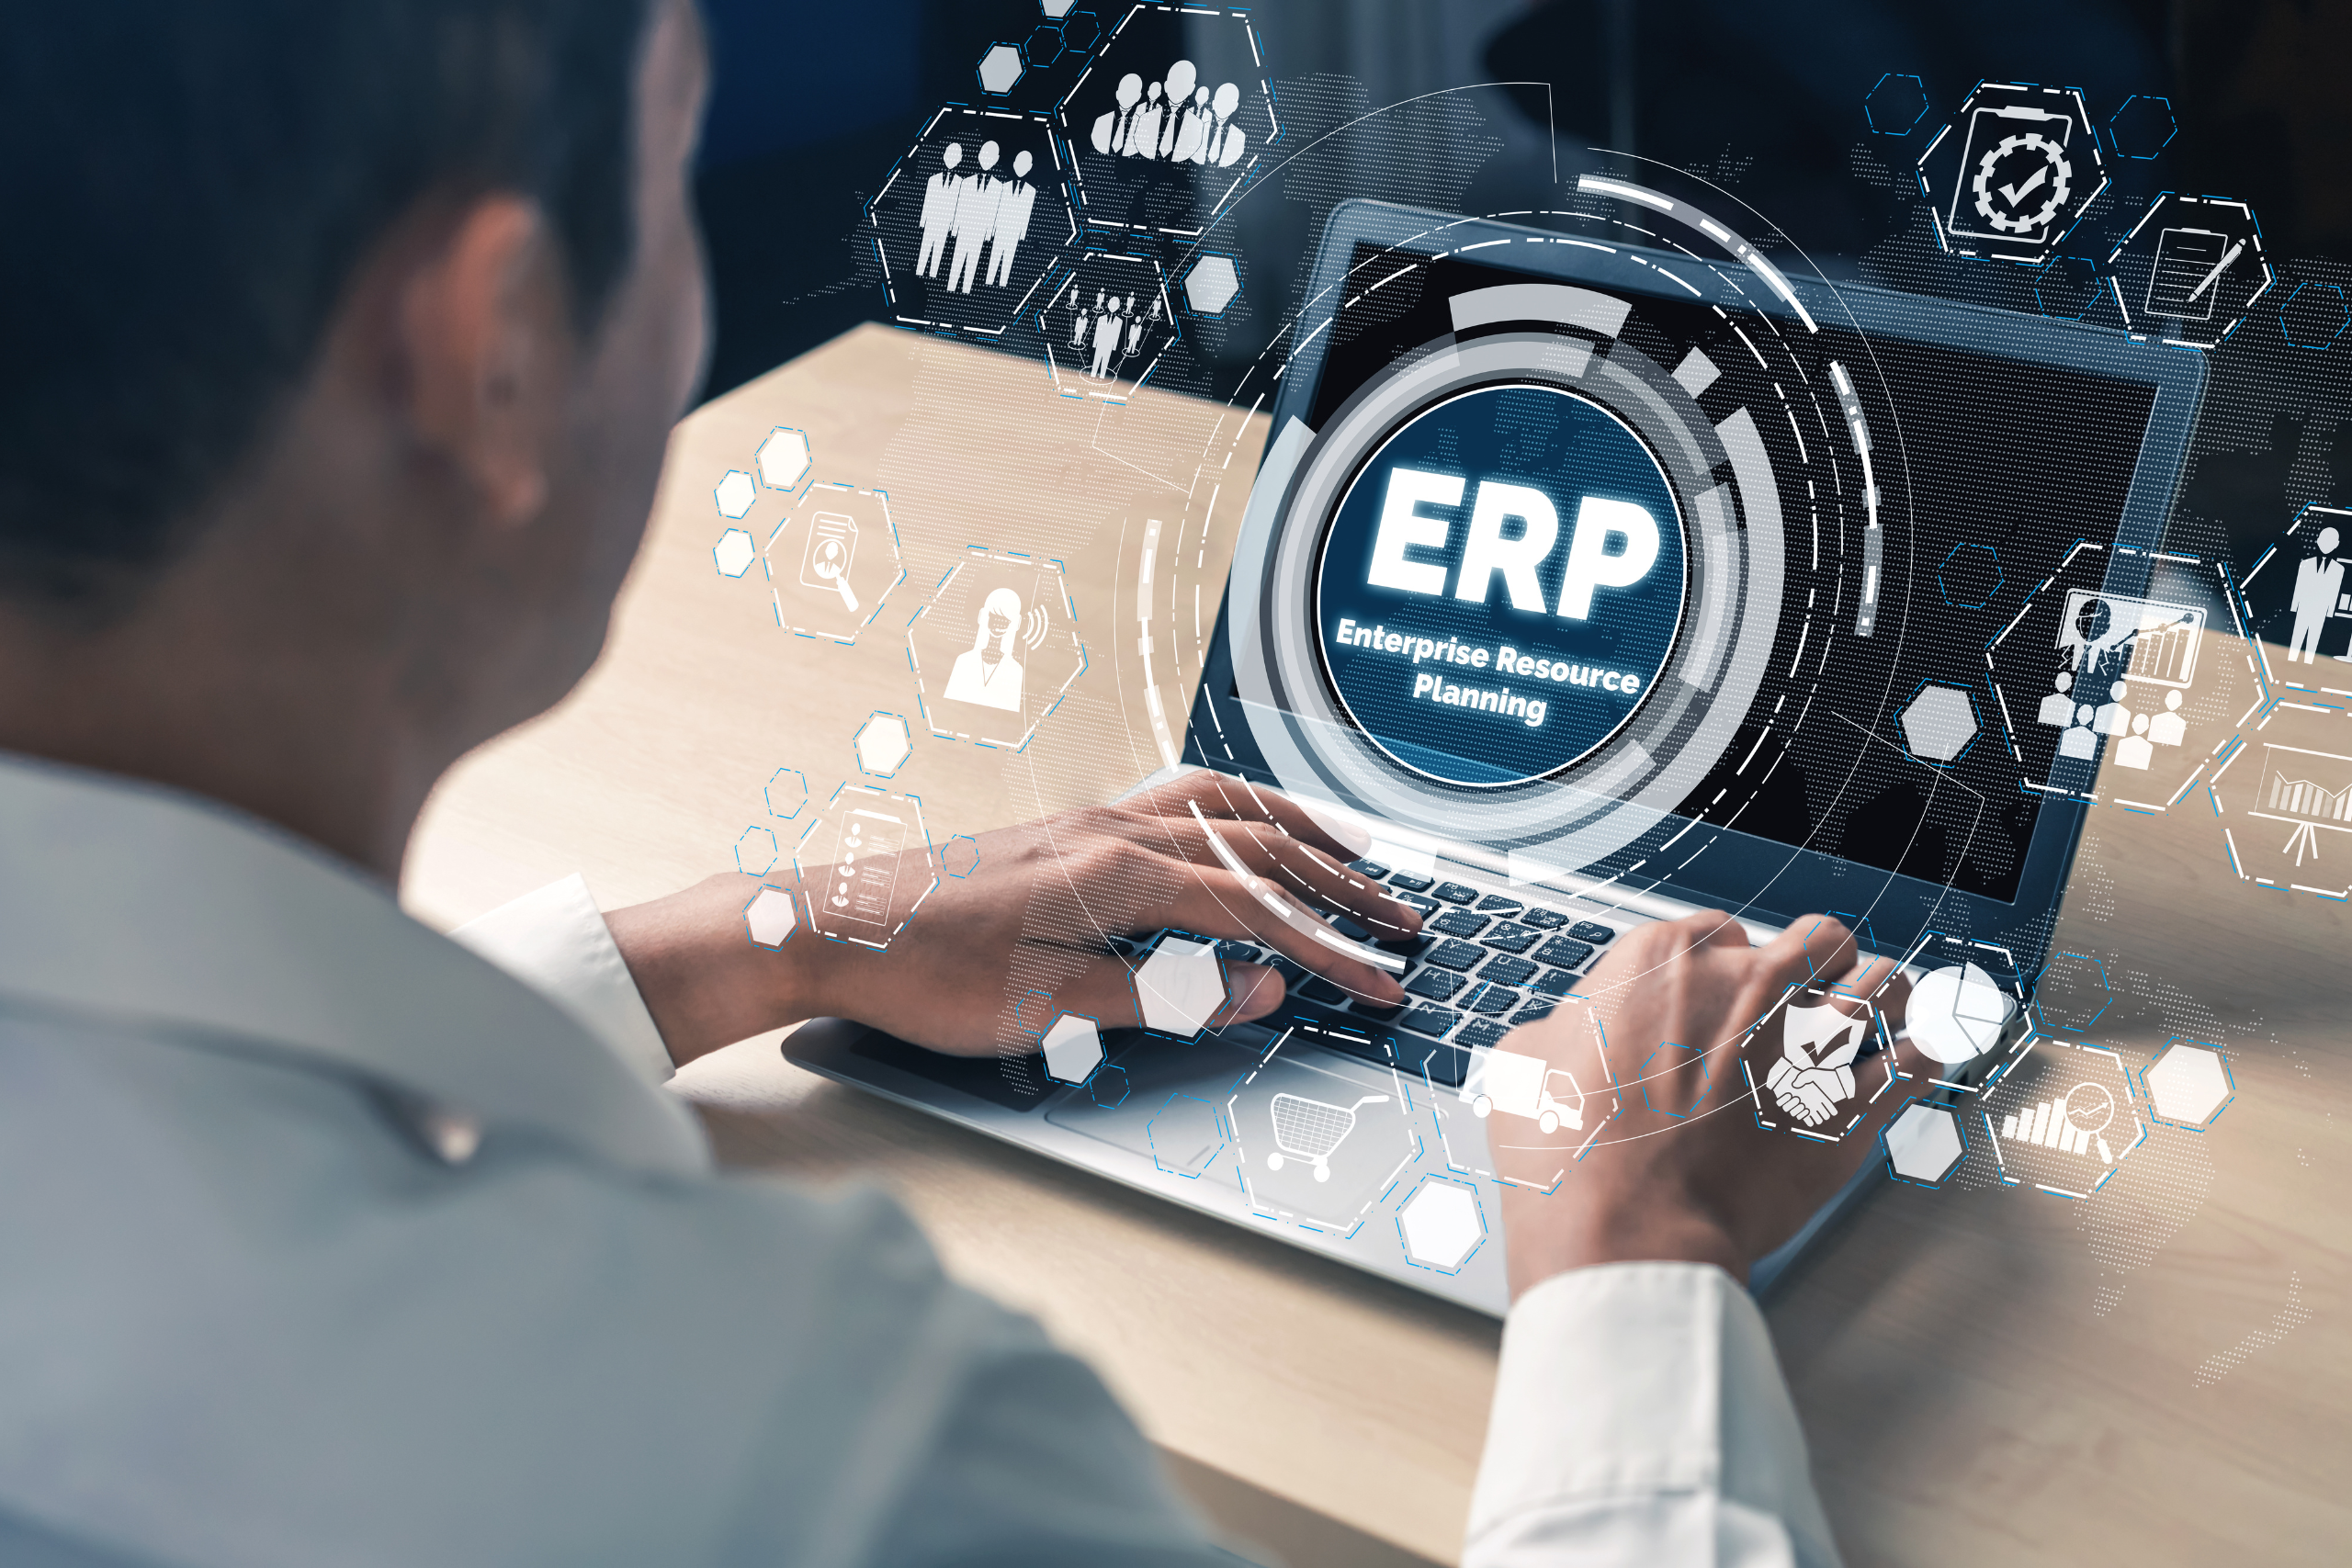 Comment choisir son ERP pour PME ? Les fonctionnalités et les avantages